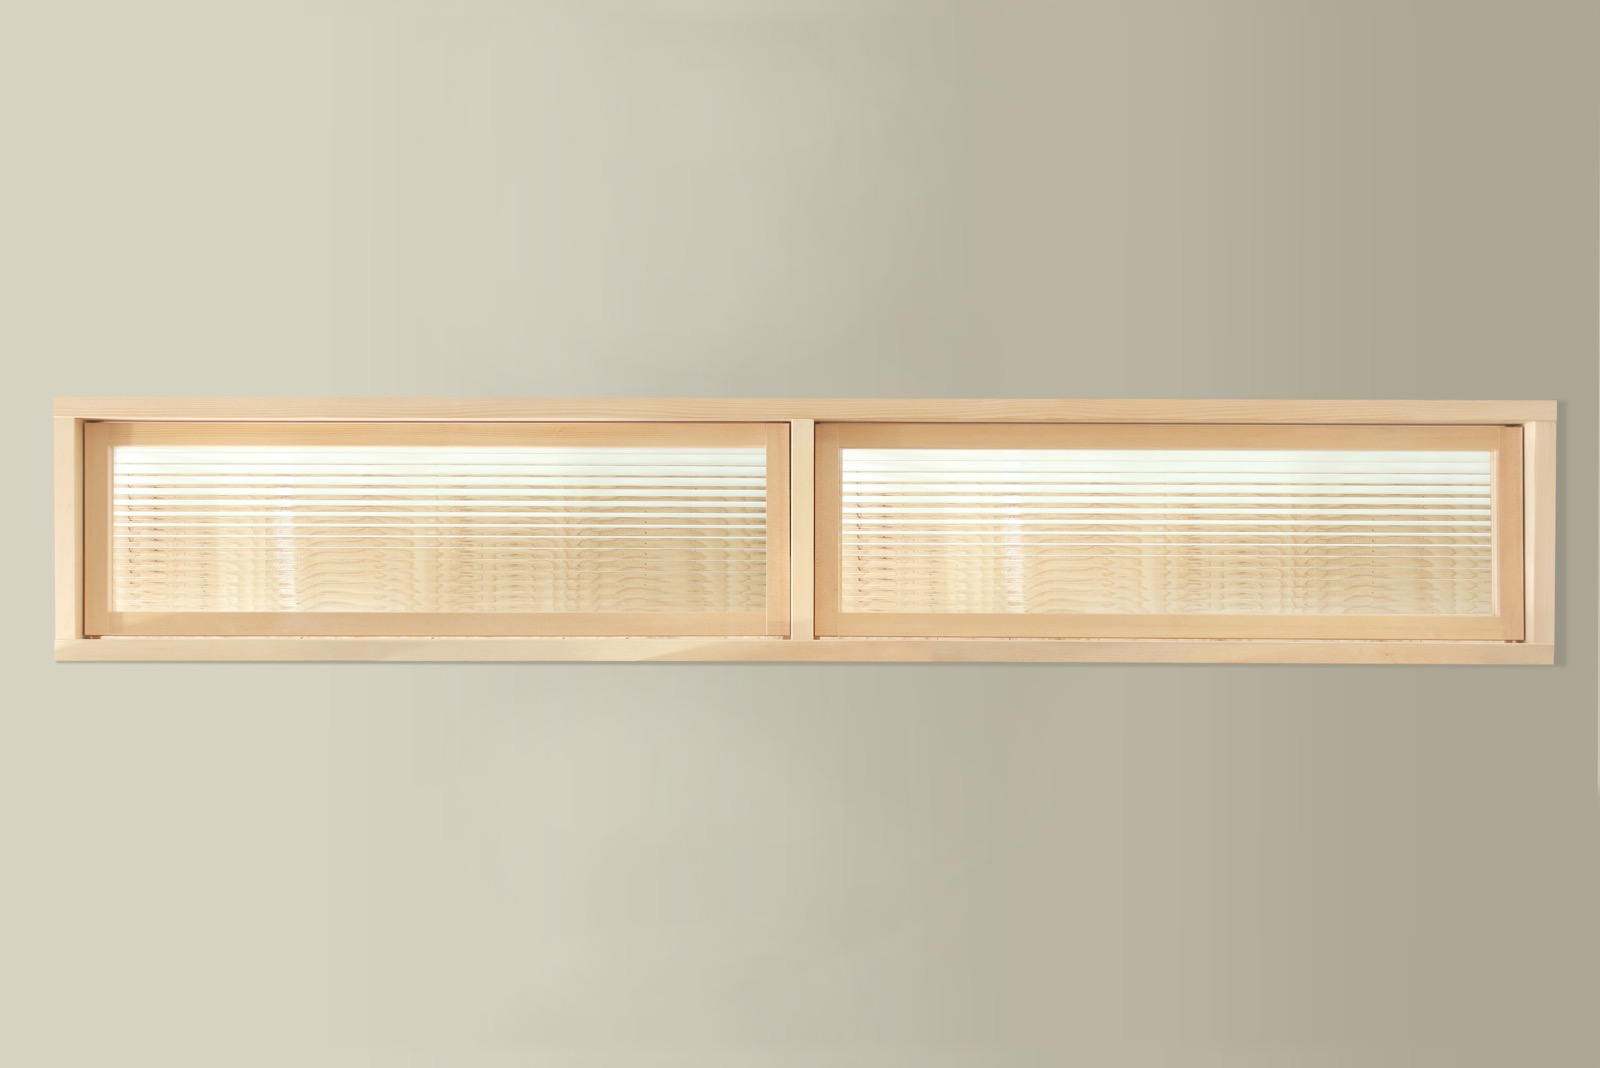 木製室内窓 横長2連 押し出しタイプ DW-DR008-04-G164 追加料金にてモールガラスにもできます